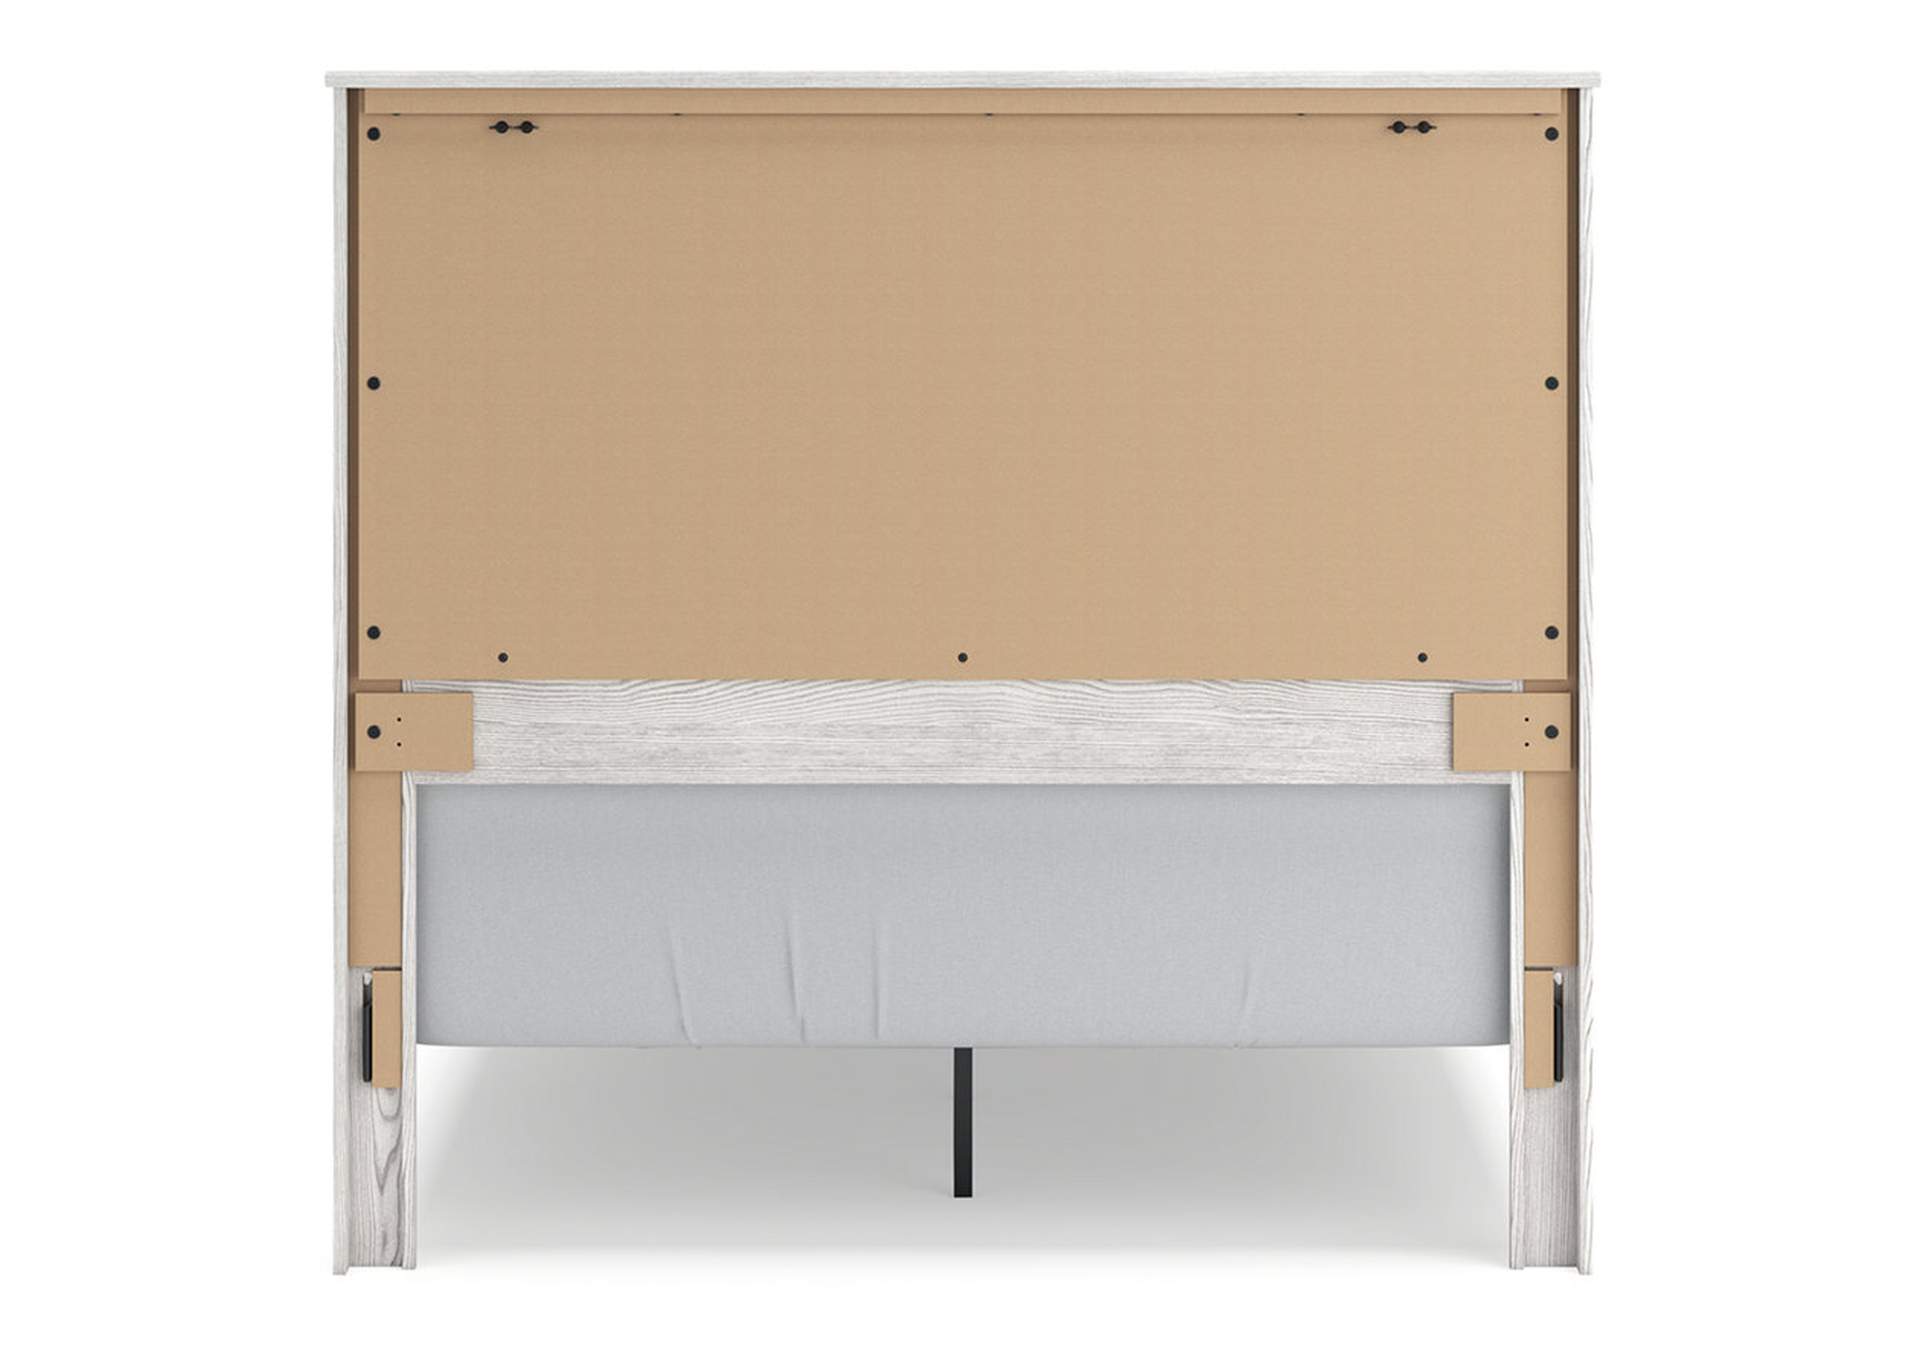 Gerridan Queen Panel Bed, Dresser, Mirror, and 2 Nightstands,Signature Design By Ashley